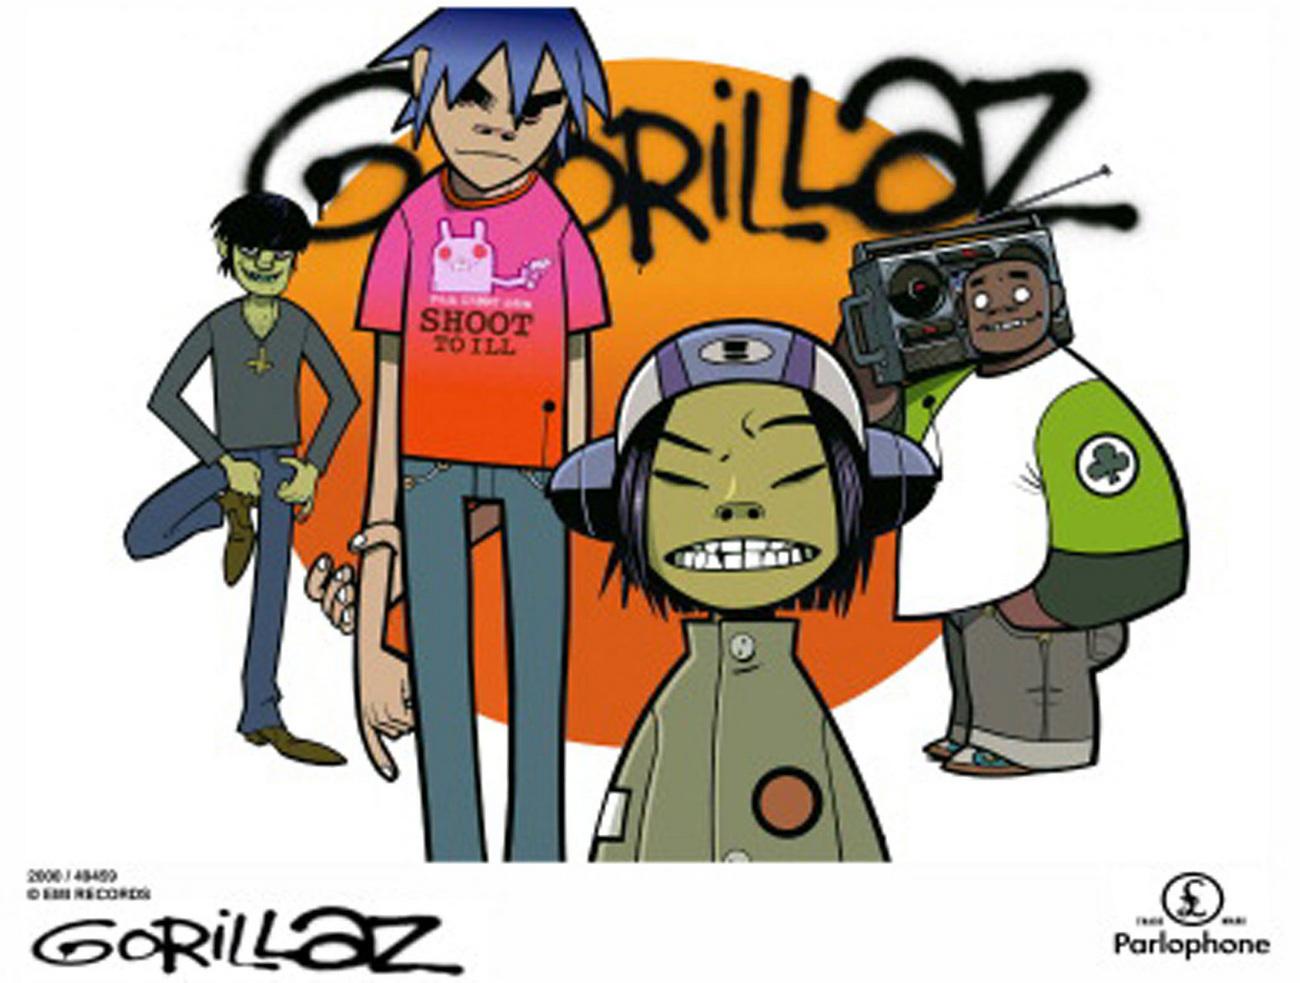 Les quatre membres fictifs animés du groupe "Gorillaz": 2D, Murdoc, Russel, et Noodle. [KEYSTONE]